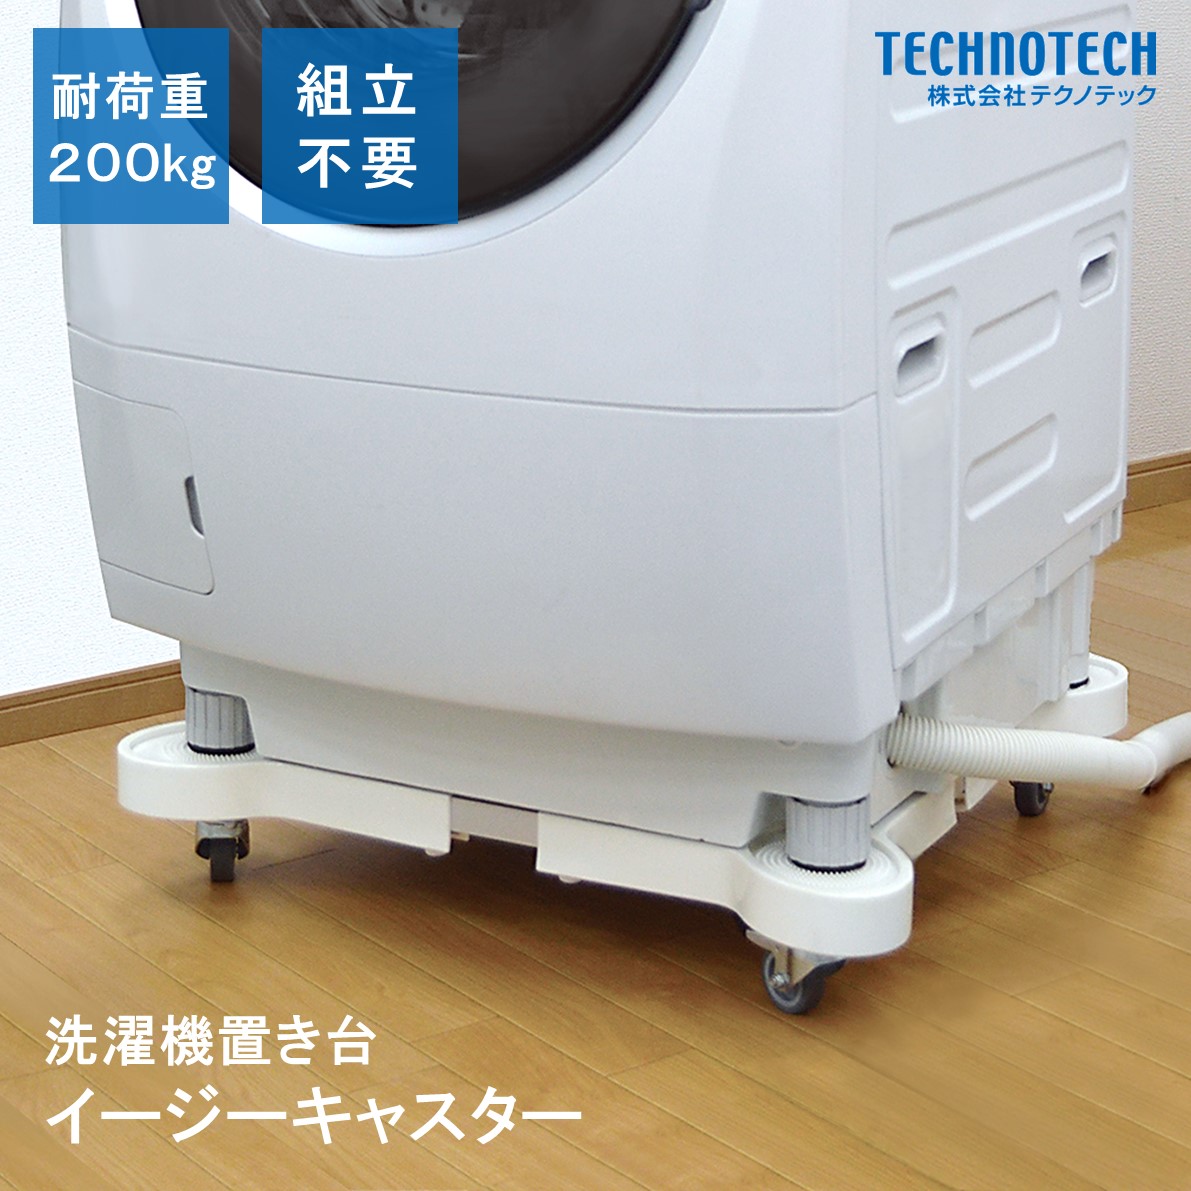 楽天市場 イージーキャスター Ec760 洗濯機 置き台 キャスター付 株式会社テクノテック